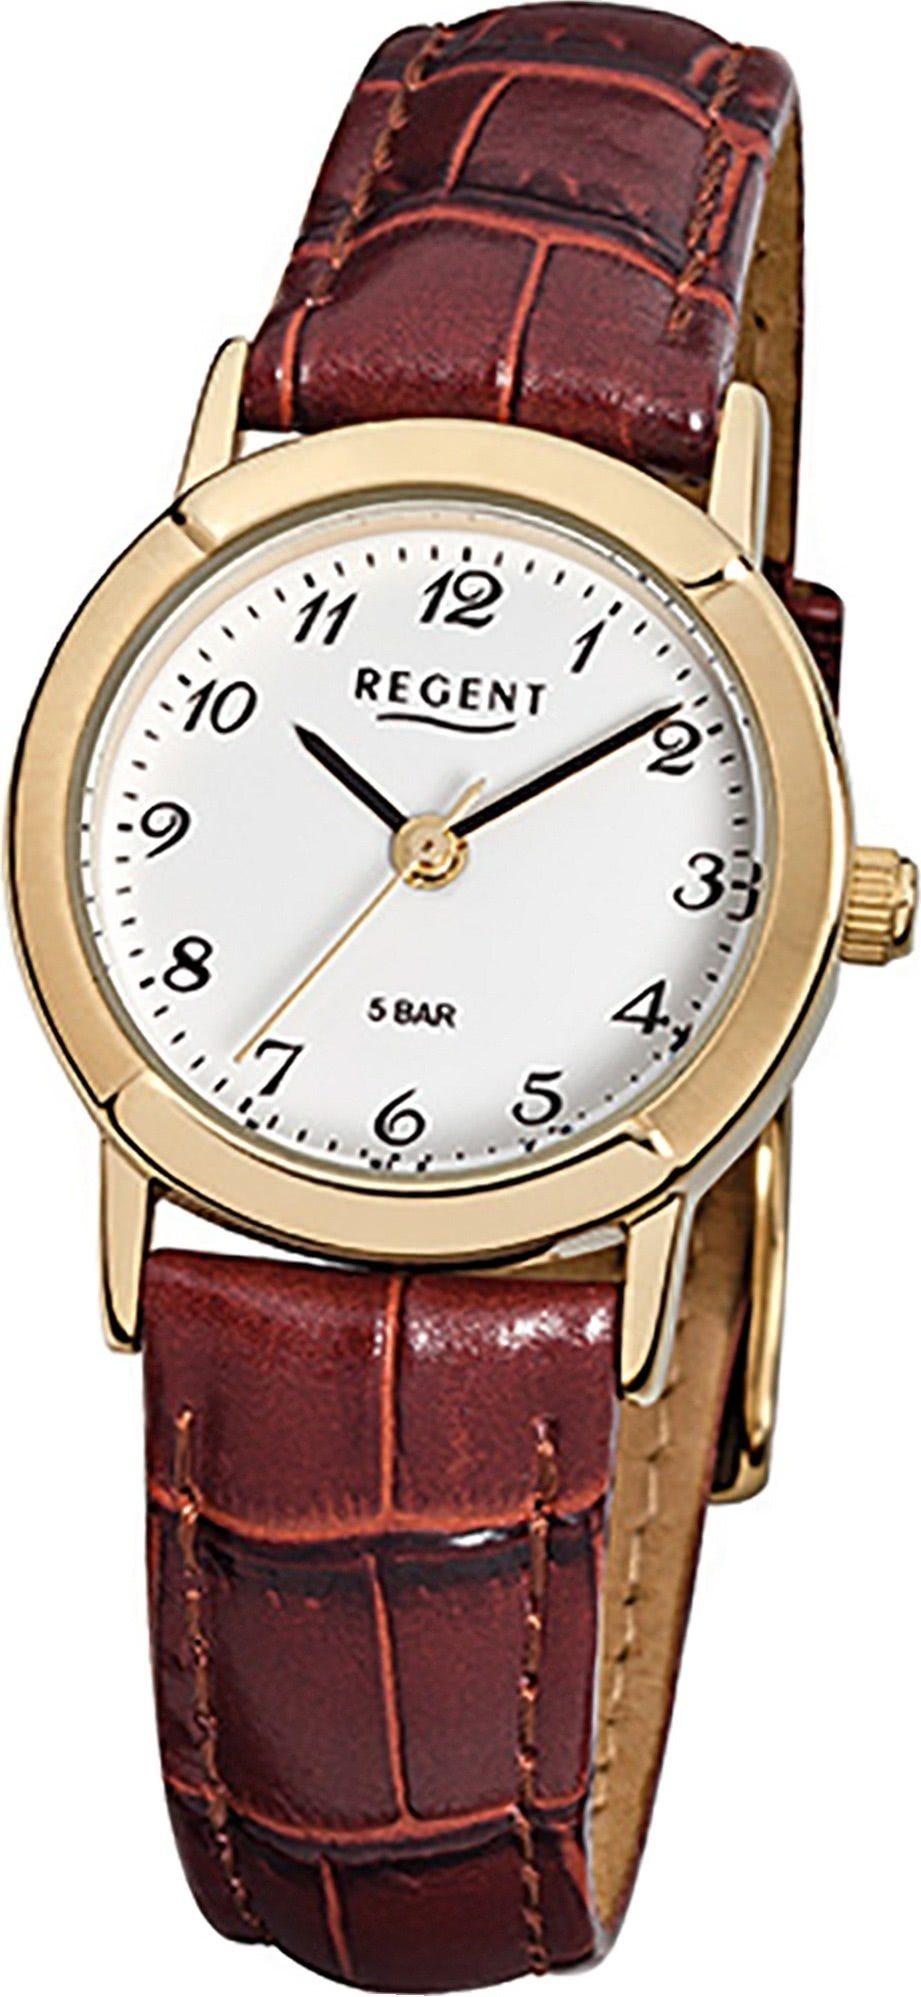 Regent Quarzuhr Regent Leder Damen Uhr F-575 Quarzuhr, Damenuhr Lederarmband braun, rundes Gehäuse, klein (ca. 25mm)